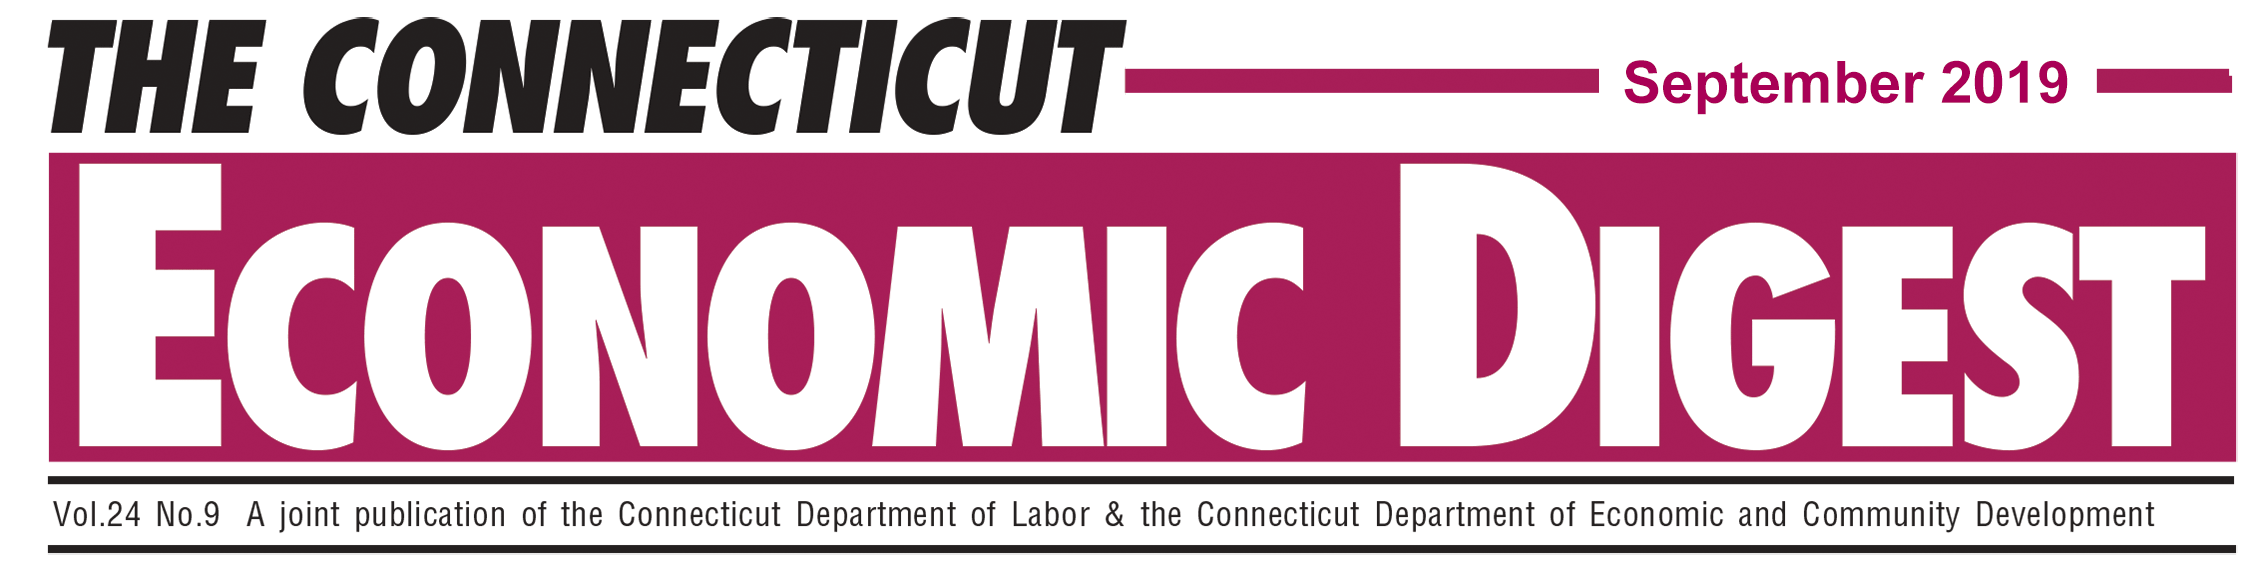 September 2019 Connecticut Economic Digest